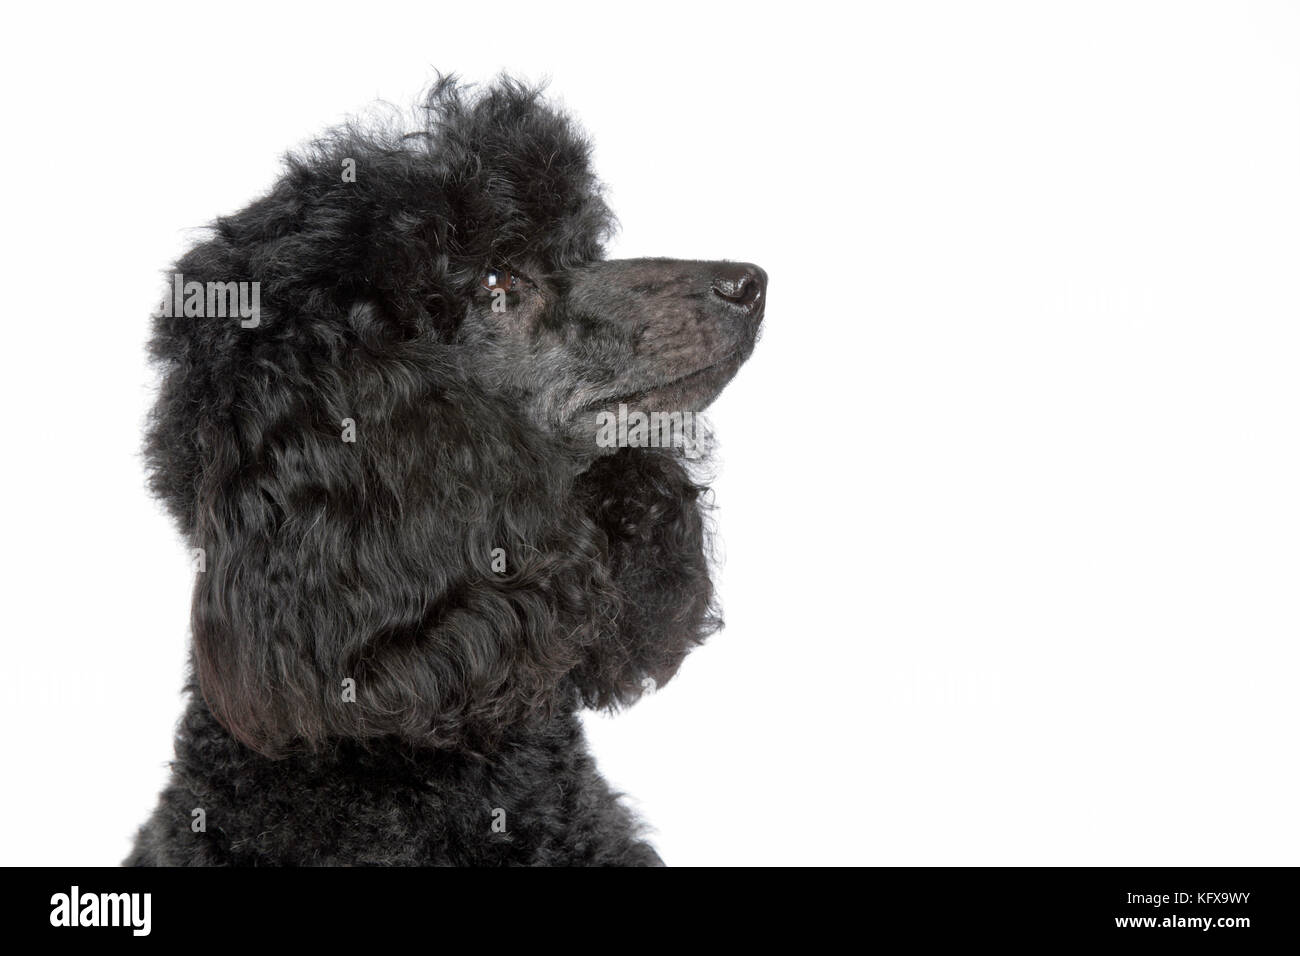 Dog. Black poodle Stock Photo